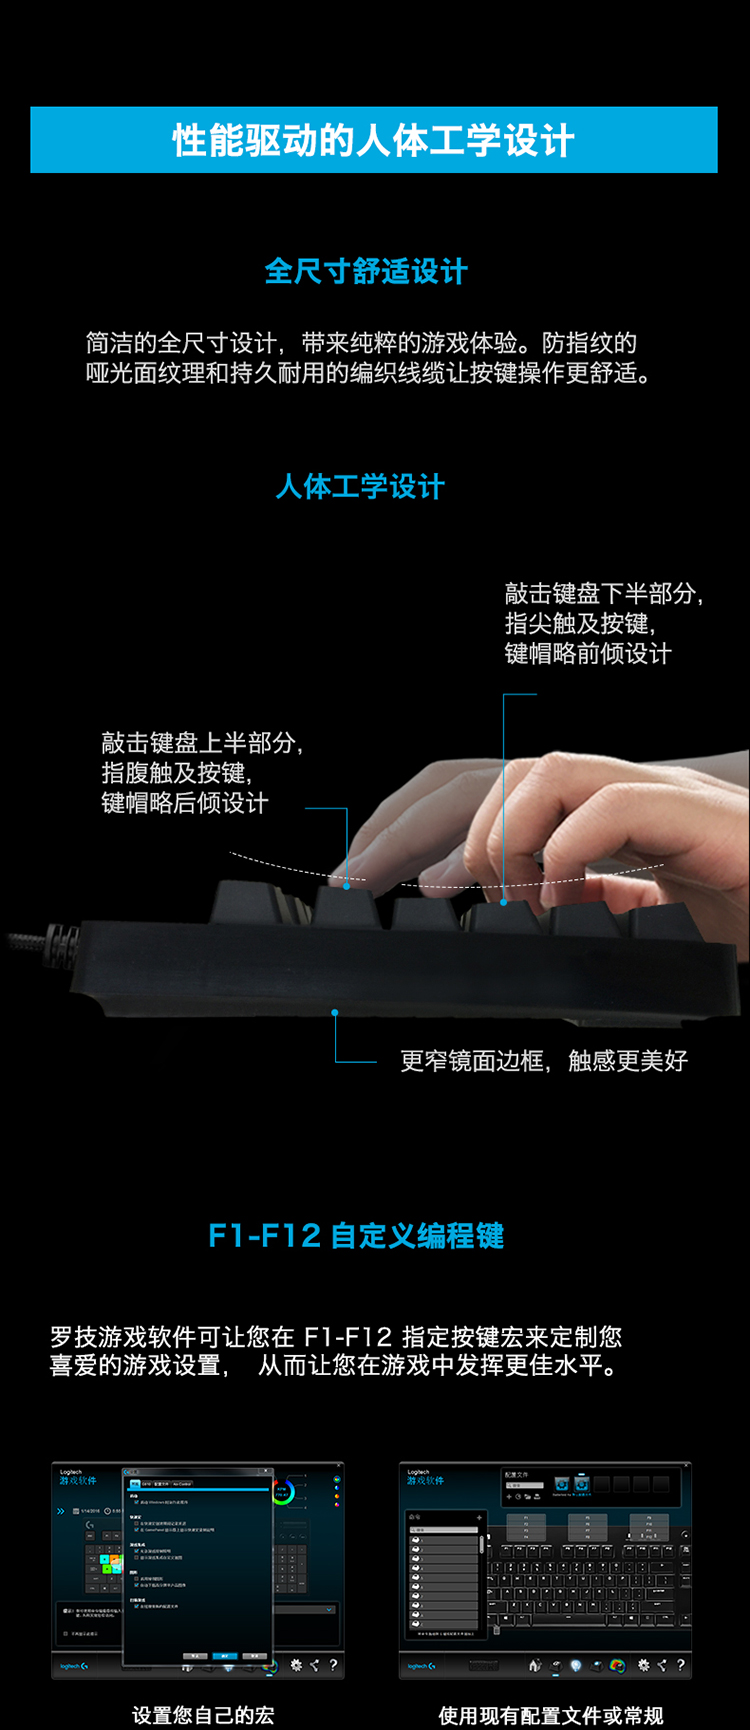 罗技（Logitech）G610 背光机械游戏键盘 青轴(920-008003)